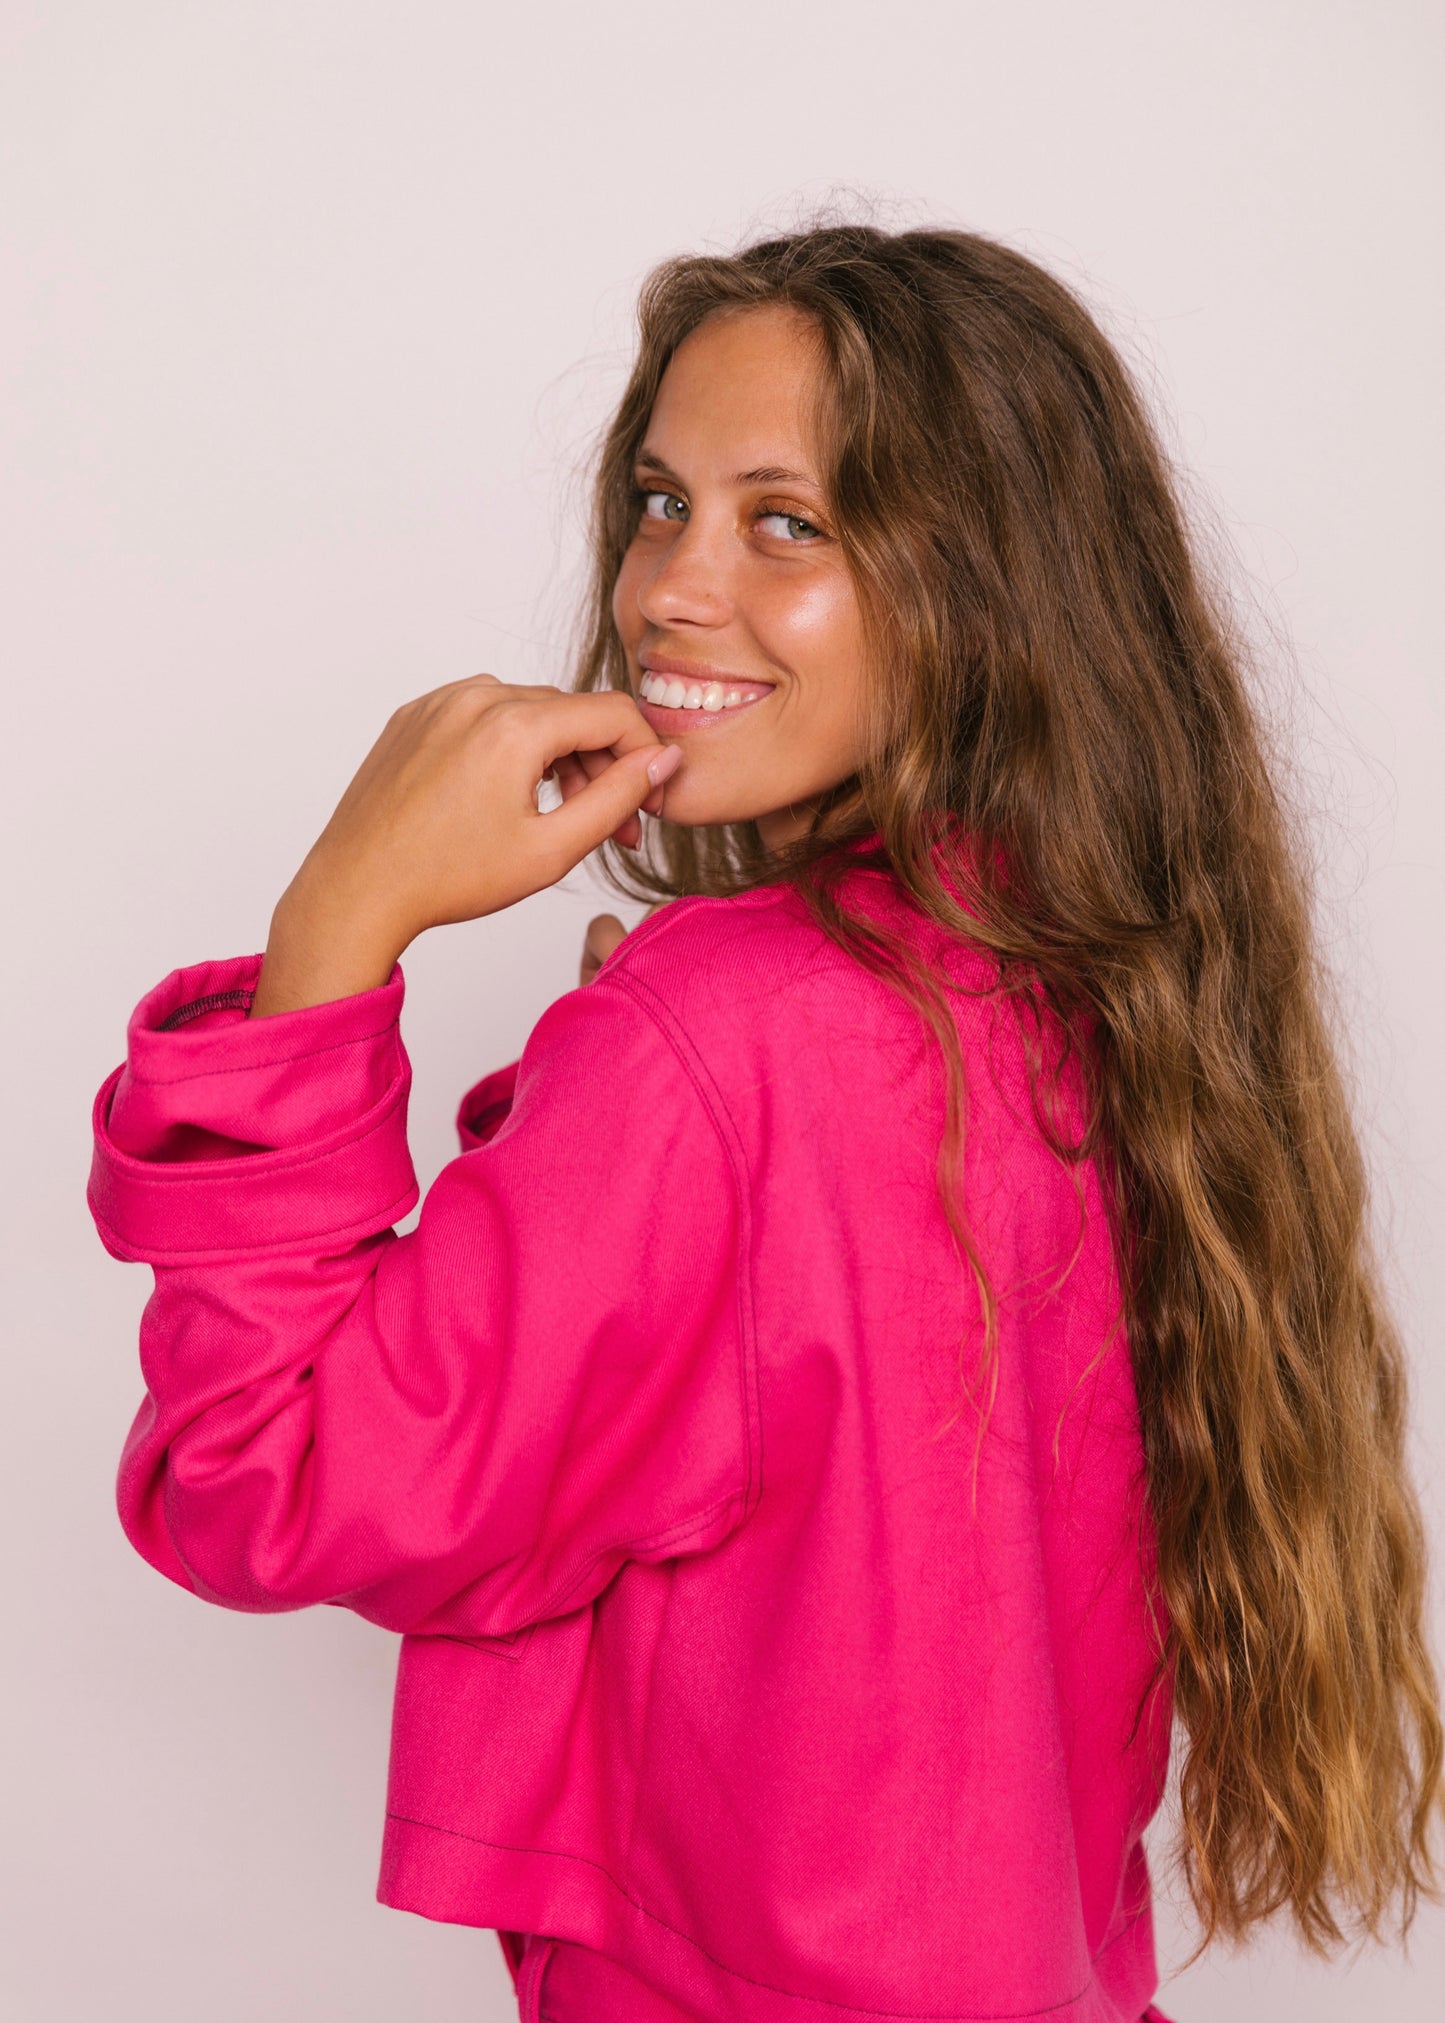 Aliados jacket - pink